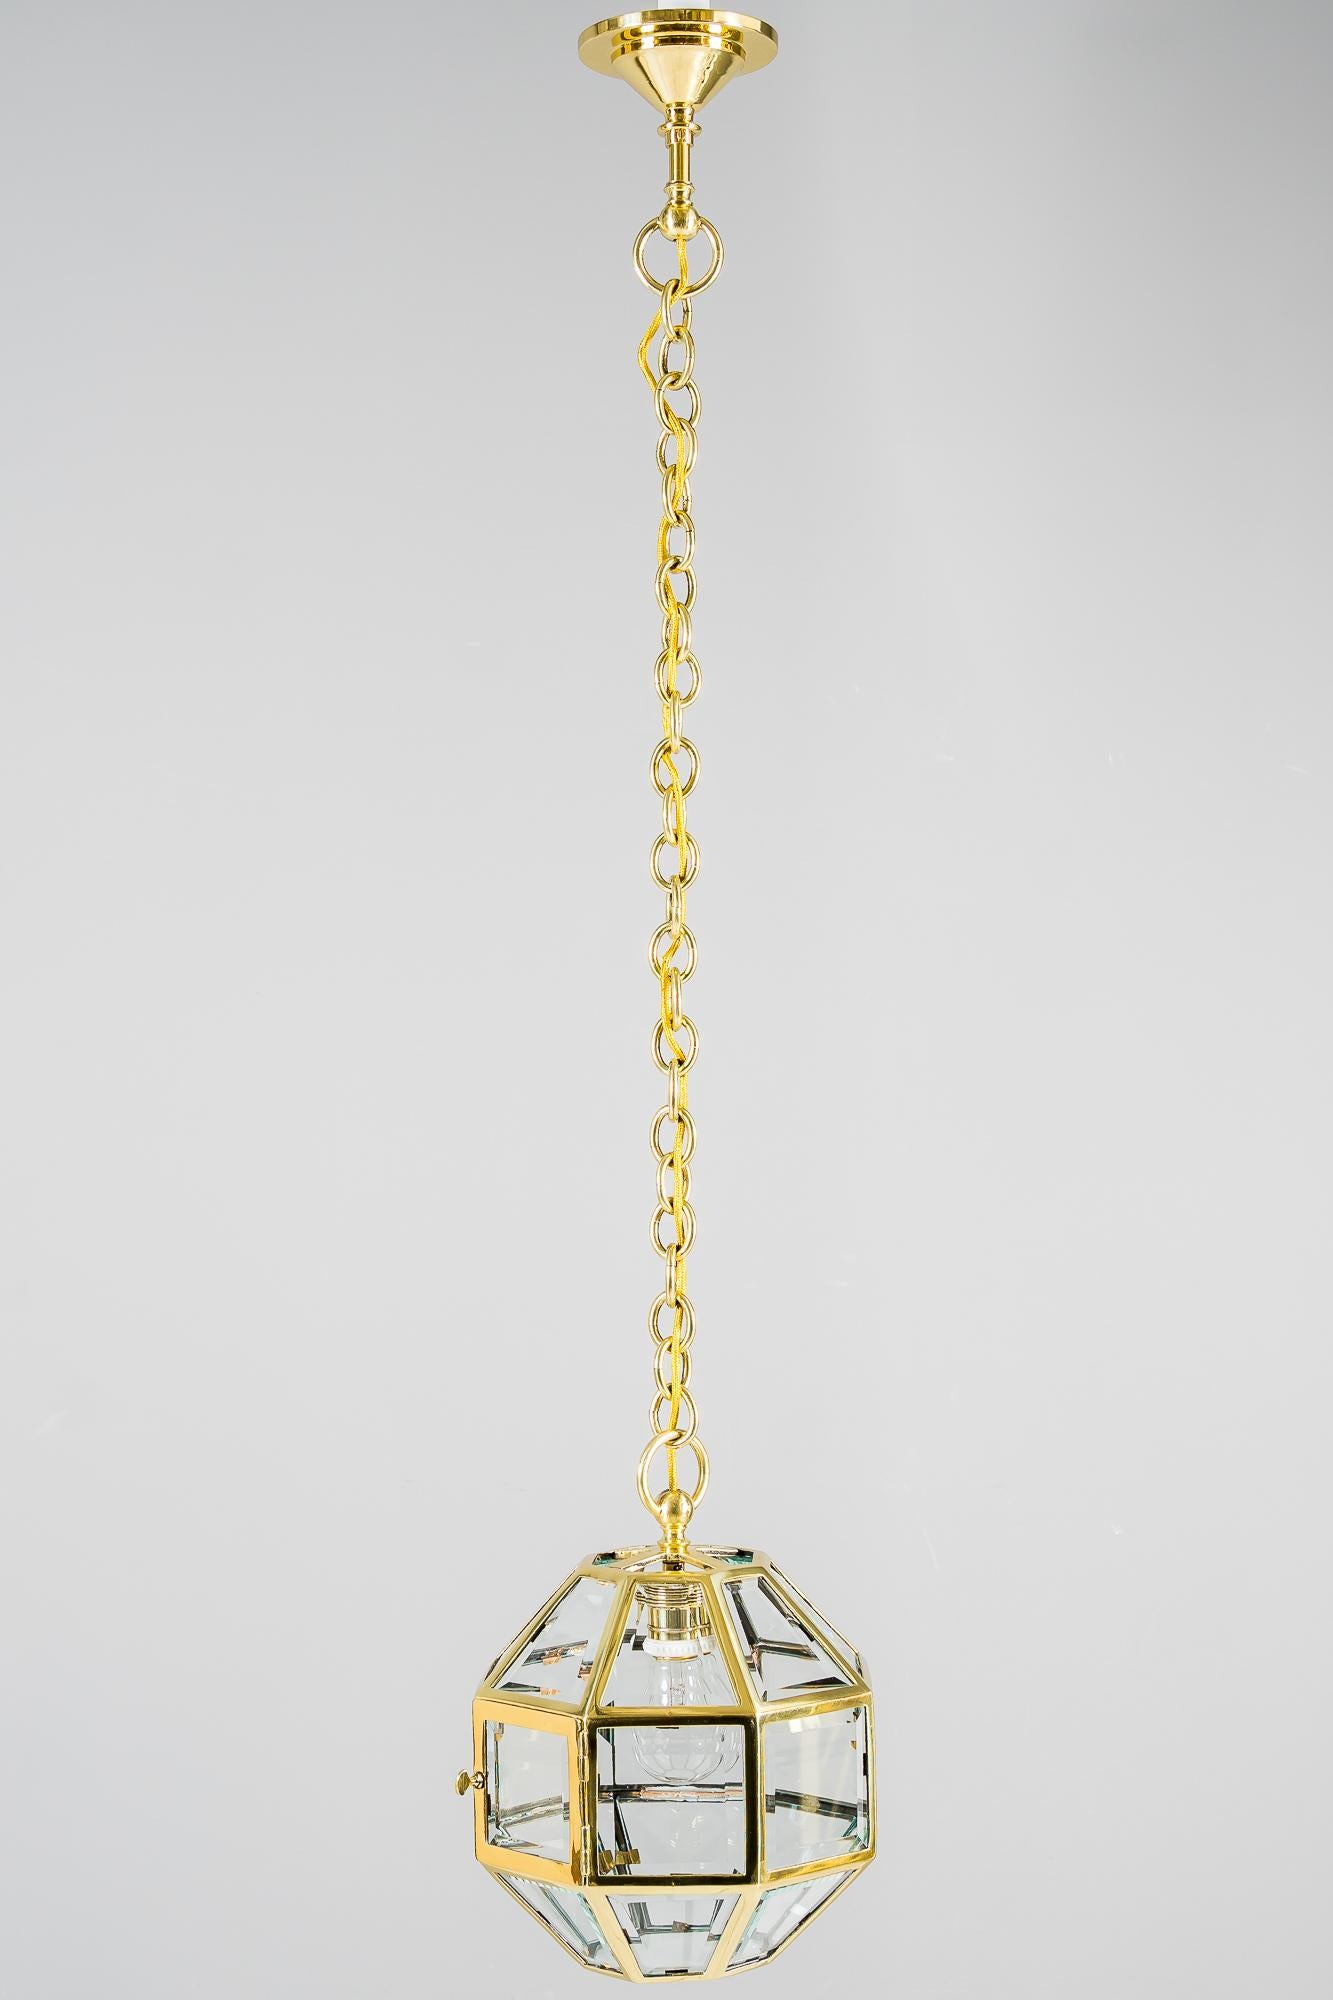 Pendentif Art Déco Vienne vers 1920 dans le style d'Adolf Loos
Pièces en laiton polies et émaillées au four
Lunettes originales
Un carré peut être ouvert pour changer les ampoules.